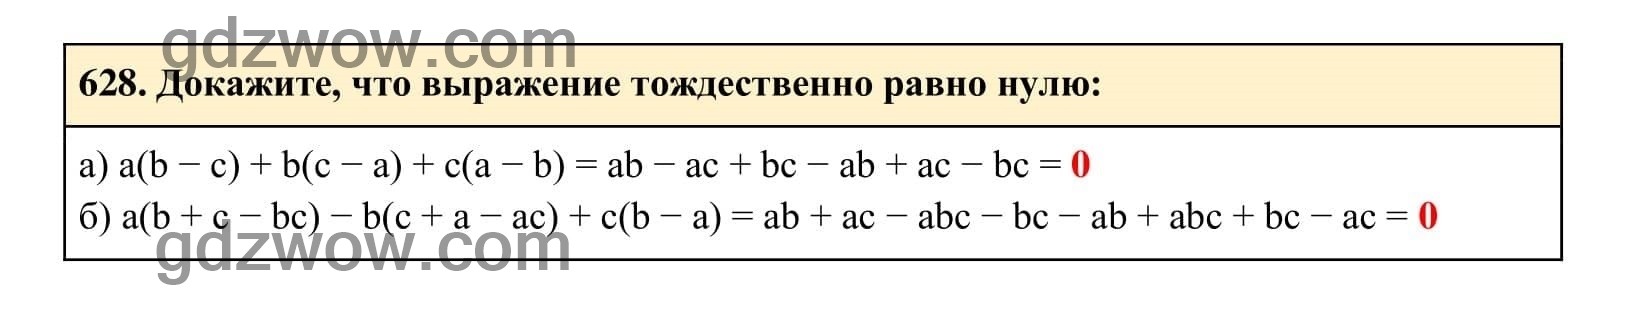 Упражнение 628 - ГДЗ по Алгебре 7 класс Учебник Макарычев (решебник) - GDZwow